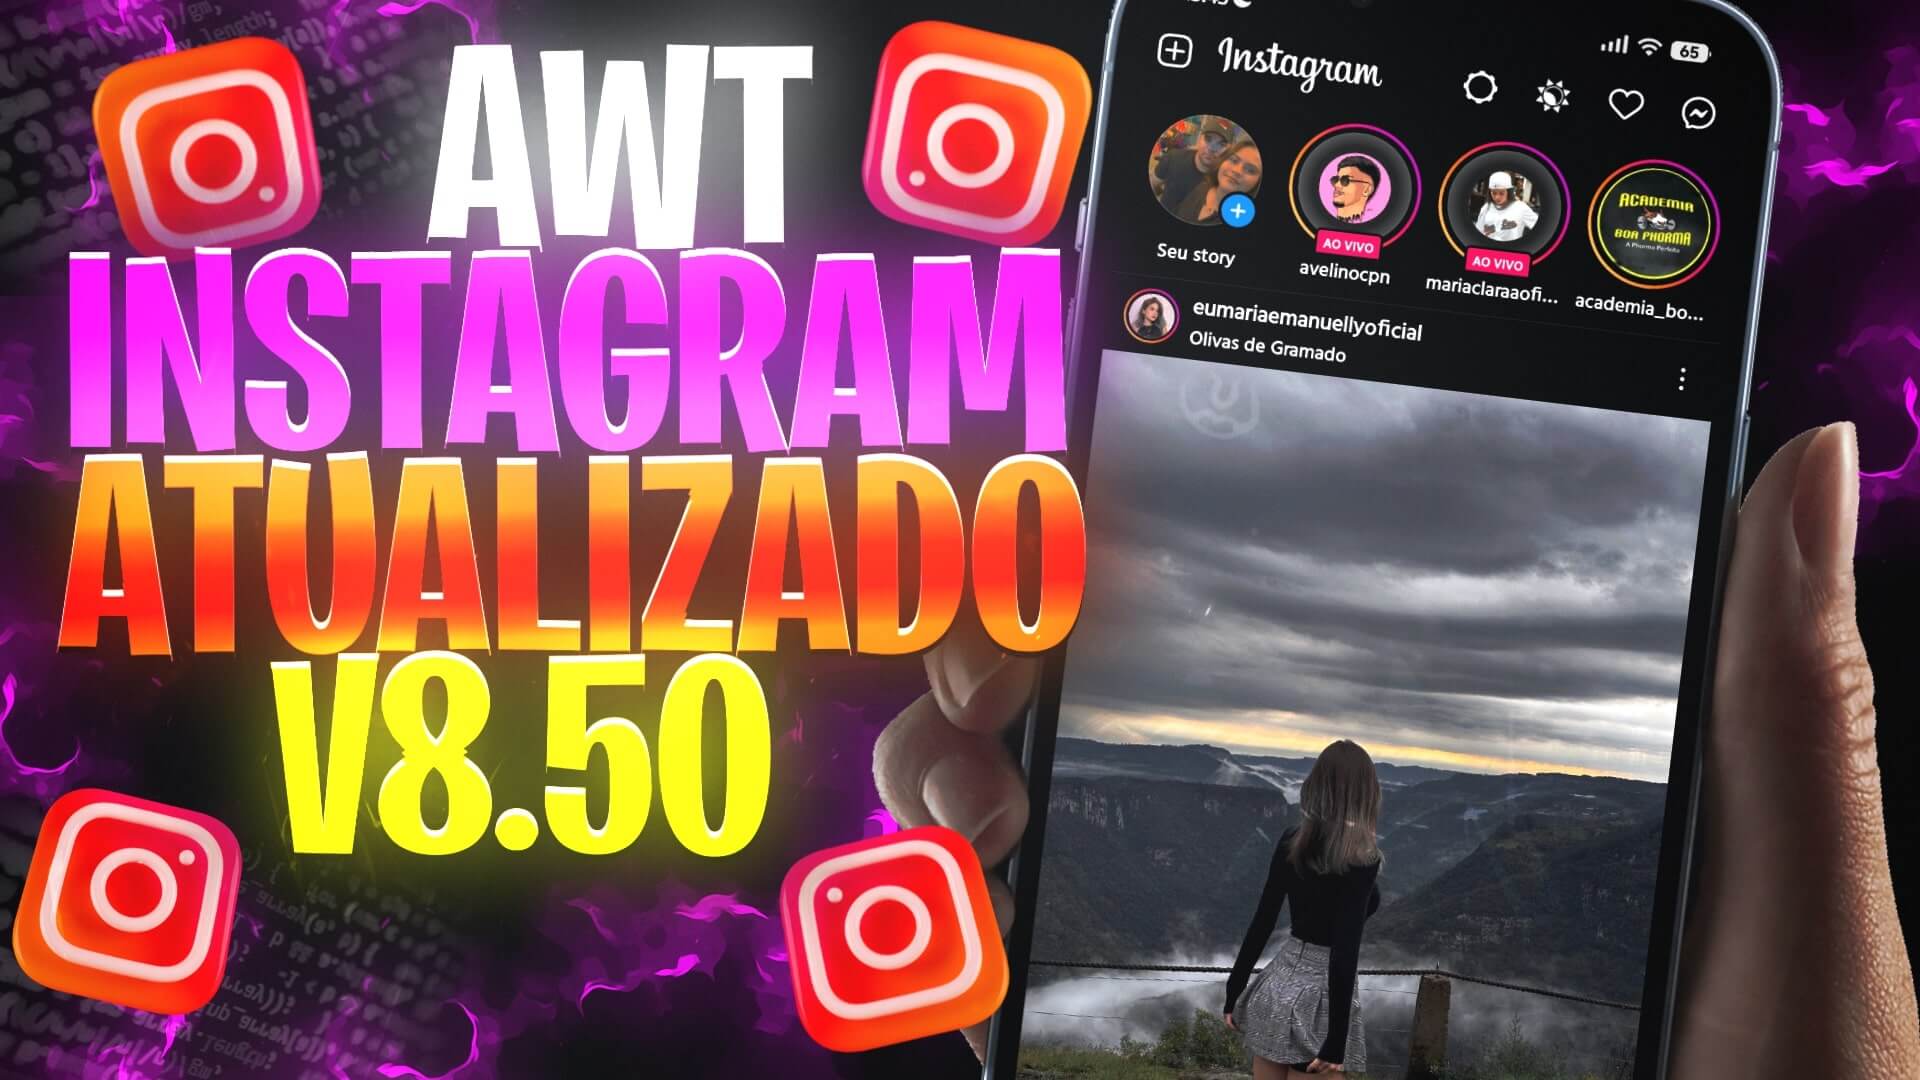 AWT Instagram – conheça e baixe agora esse mod incrível